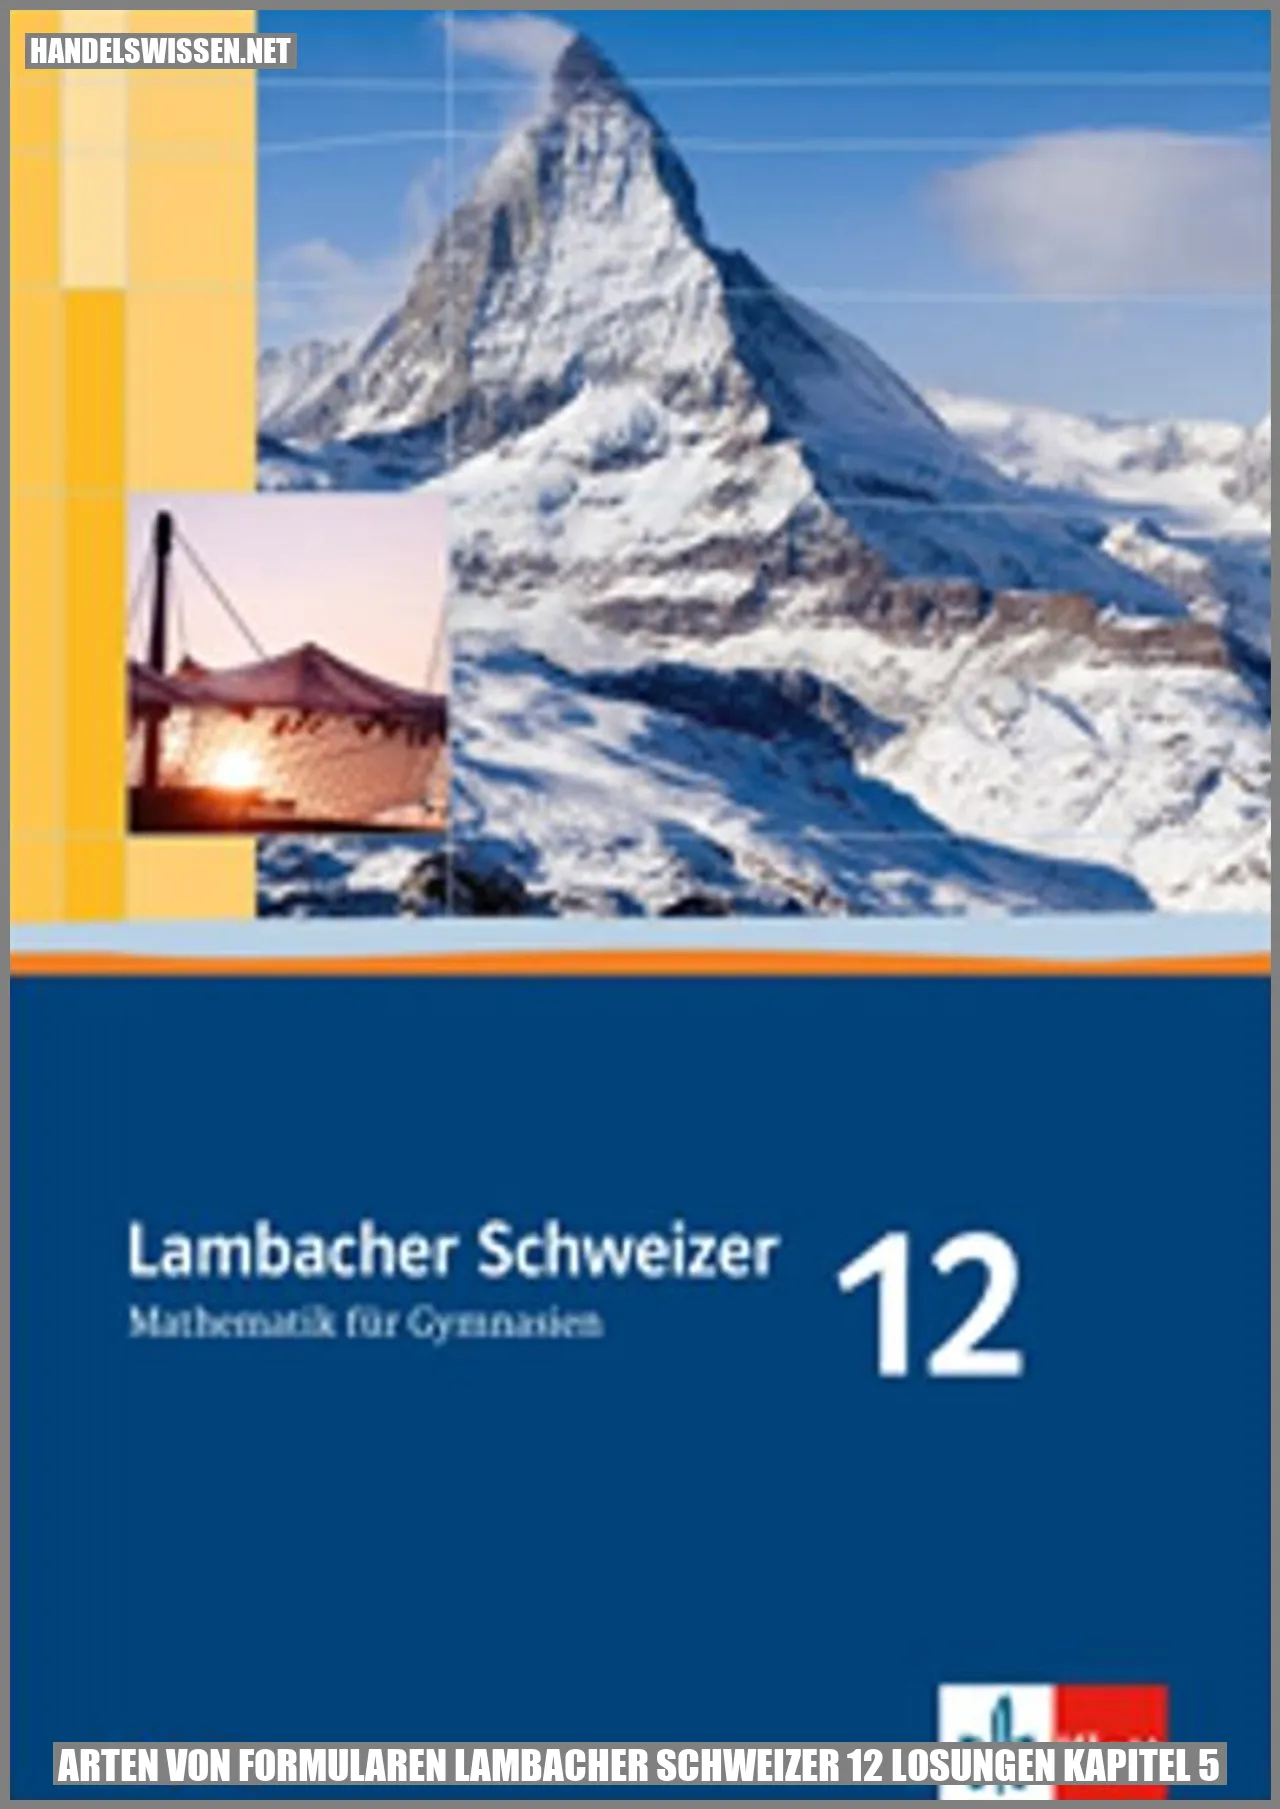 Arten von Formularen lambacher schweizer 12 losungen kapitel 5